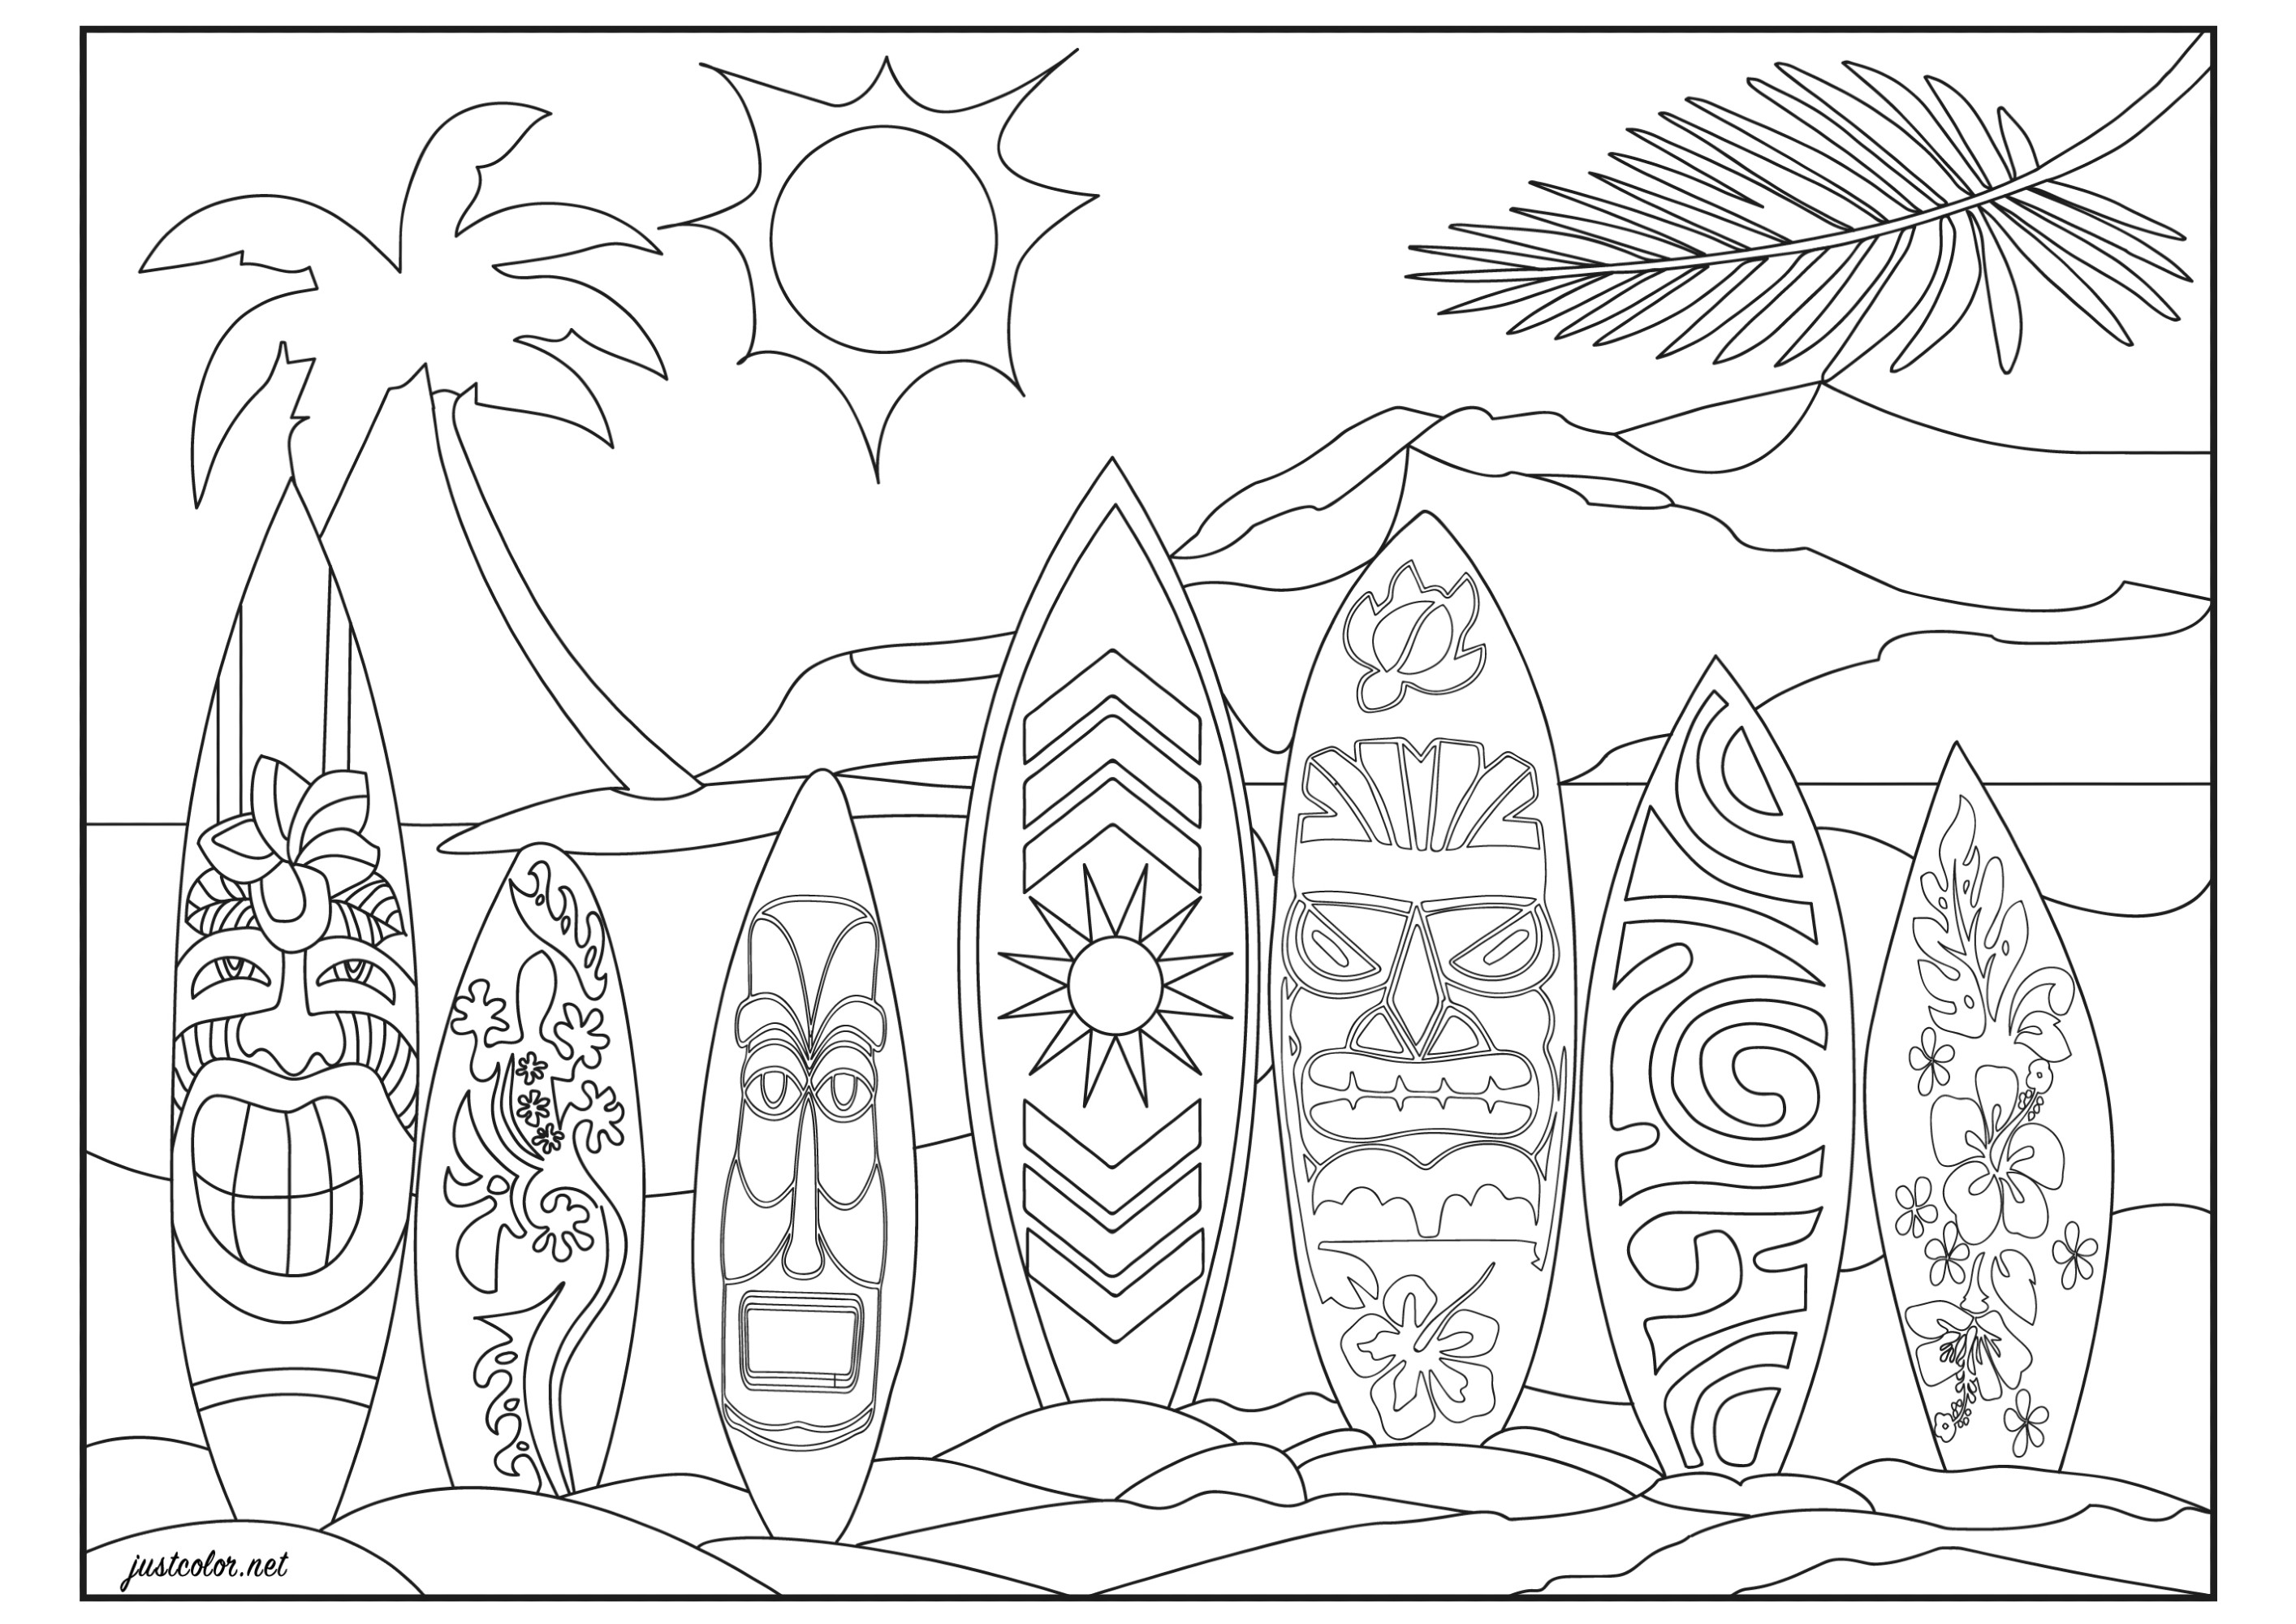 Sur une plage d’Honolulu (Hawaï, Pacifique). Alignement de surfs avec motifs tribaux hawaïens, maoris, vintages et floraux (fleurs d'hibiscus tropicales)Prêt pour surfer la vague parfaite ?
